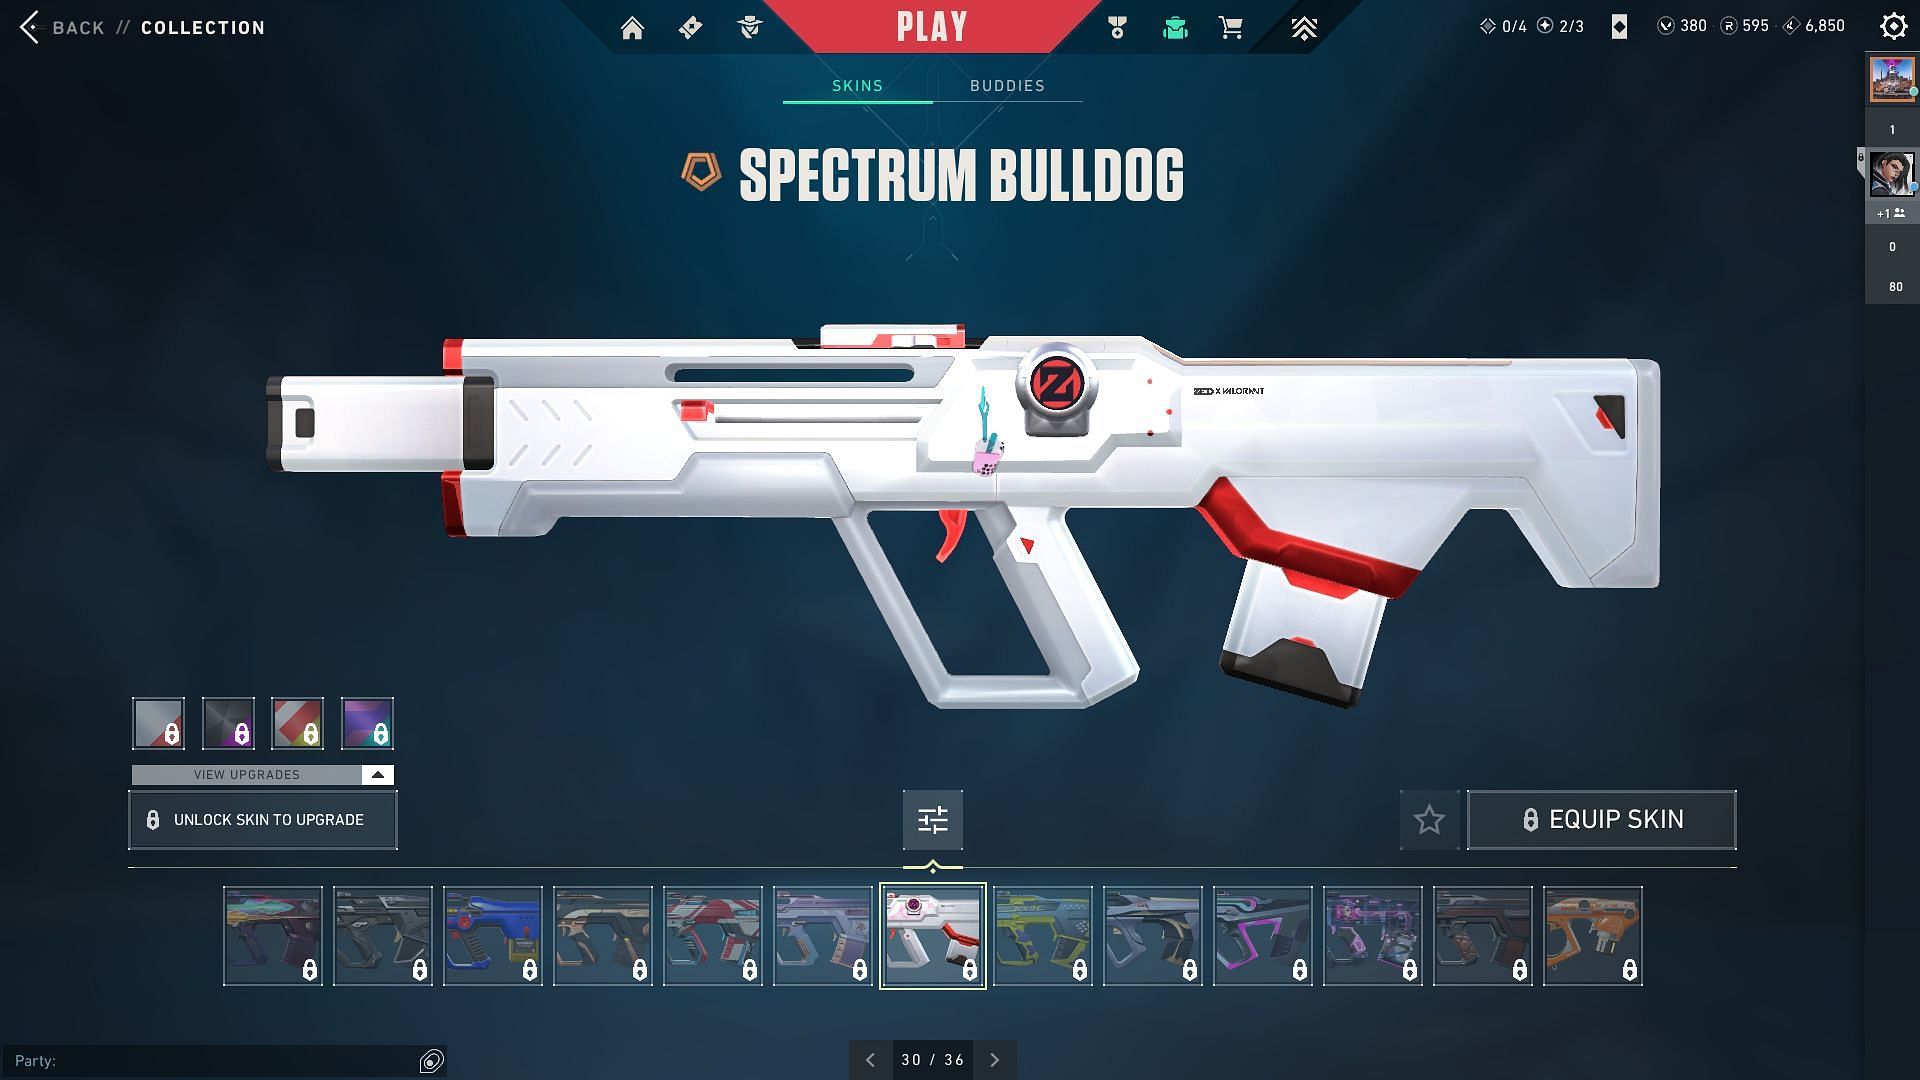 Spectrum Bulldog (Image via Riot Games)